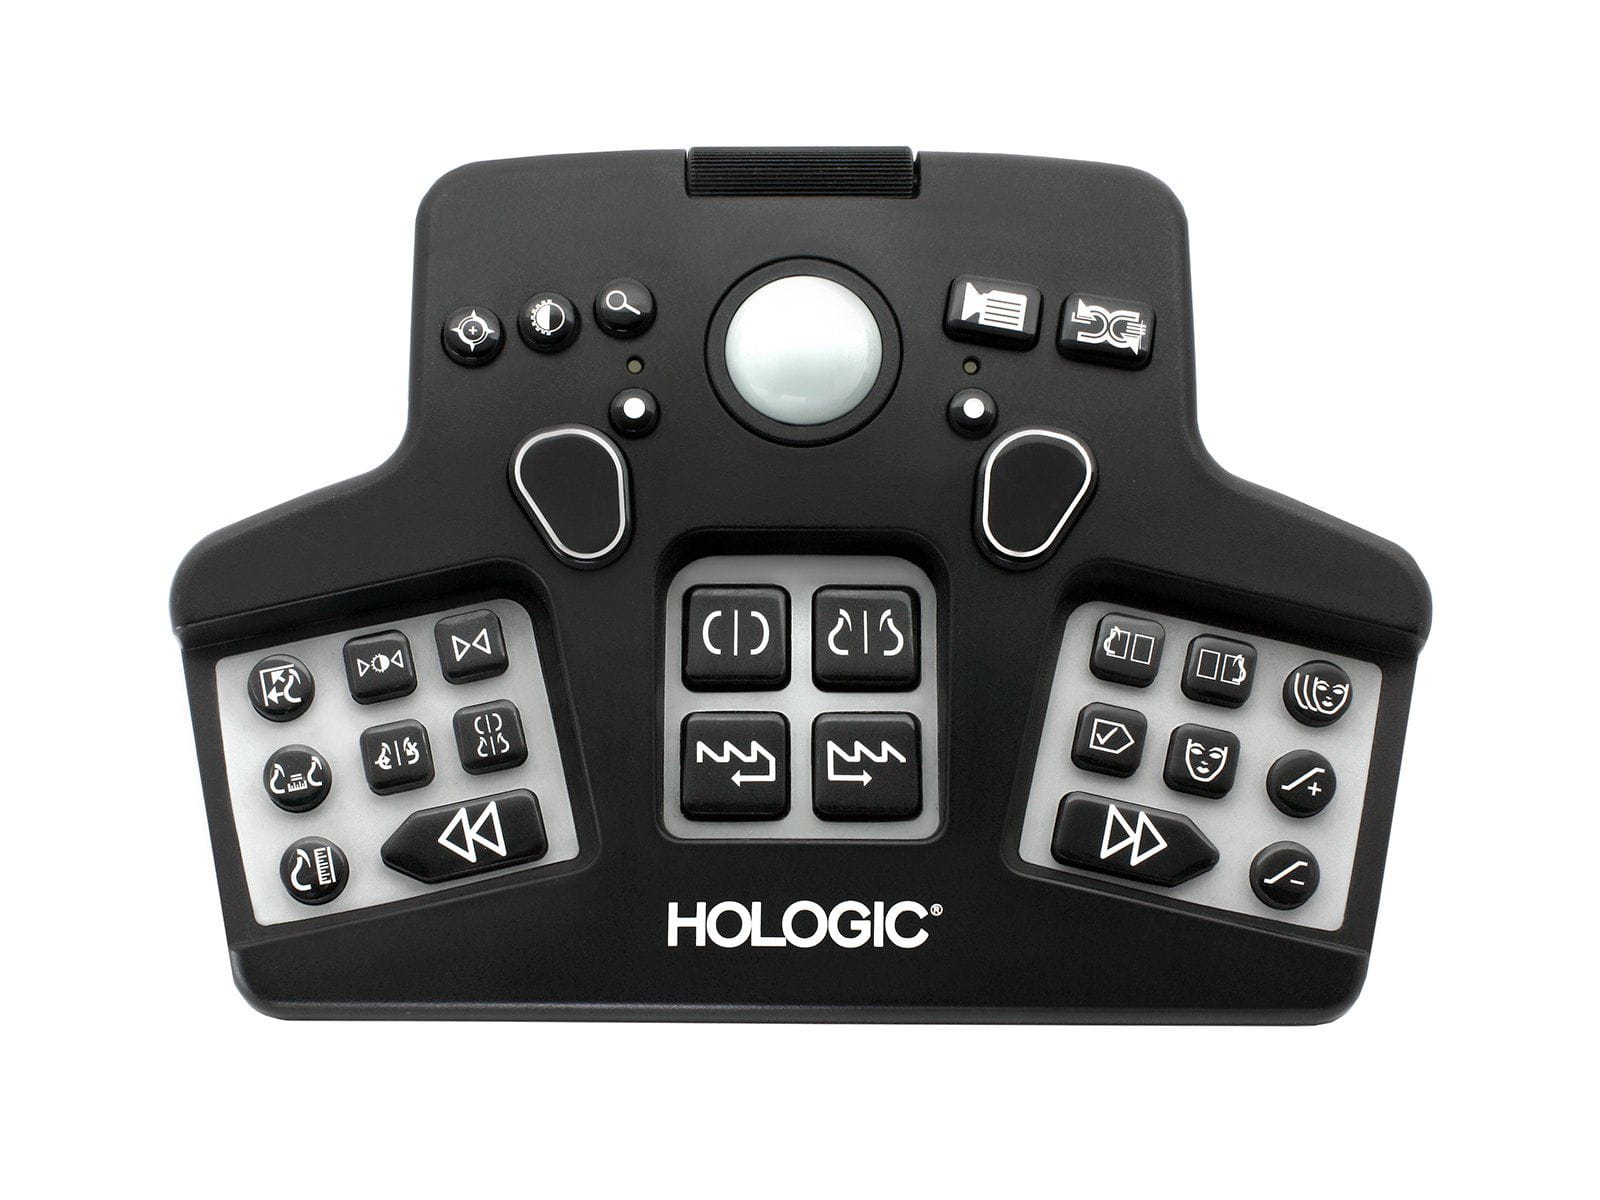 Hologic SecurView 2D 3D Breast Imaging Workstation Keypad Controller Monitors.com 